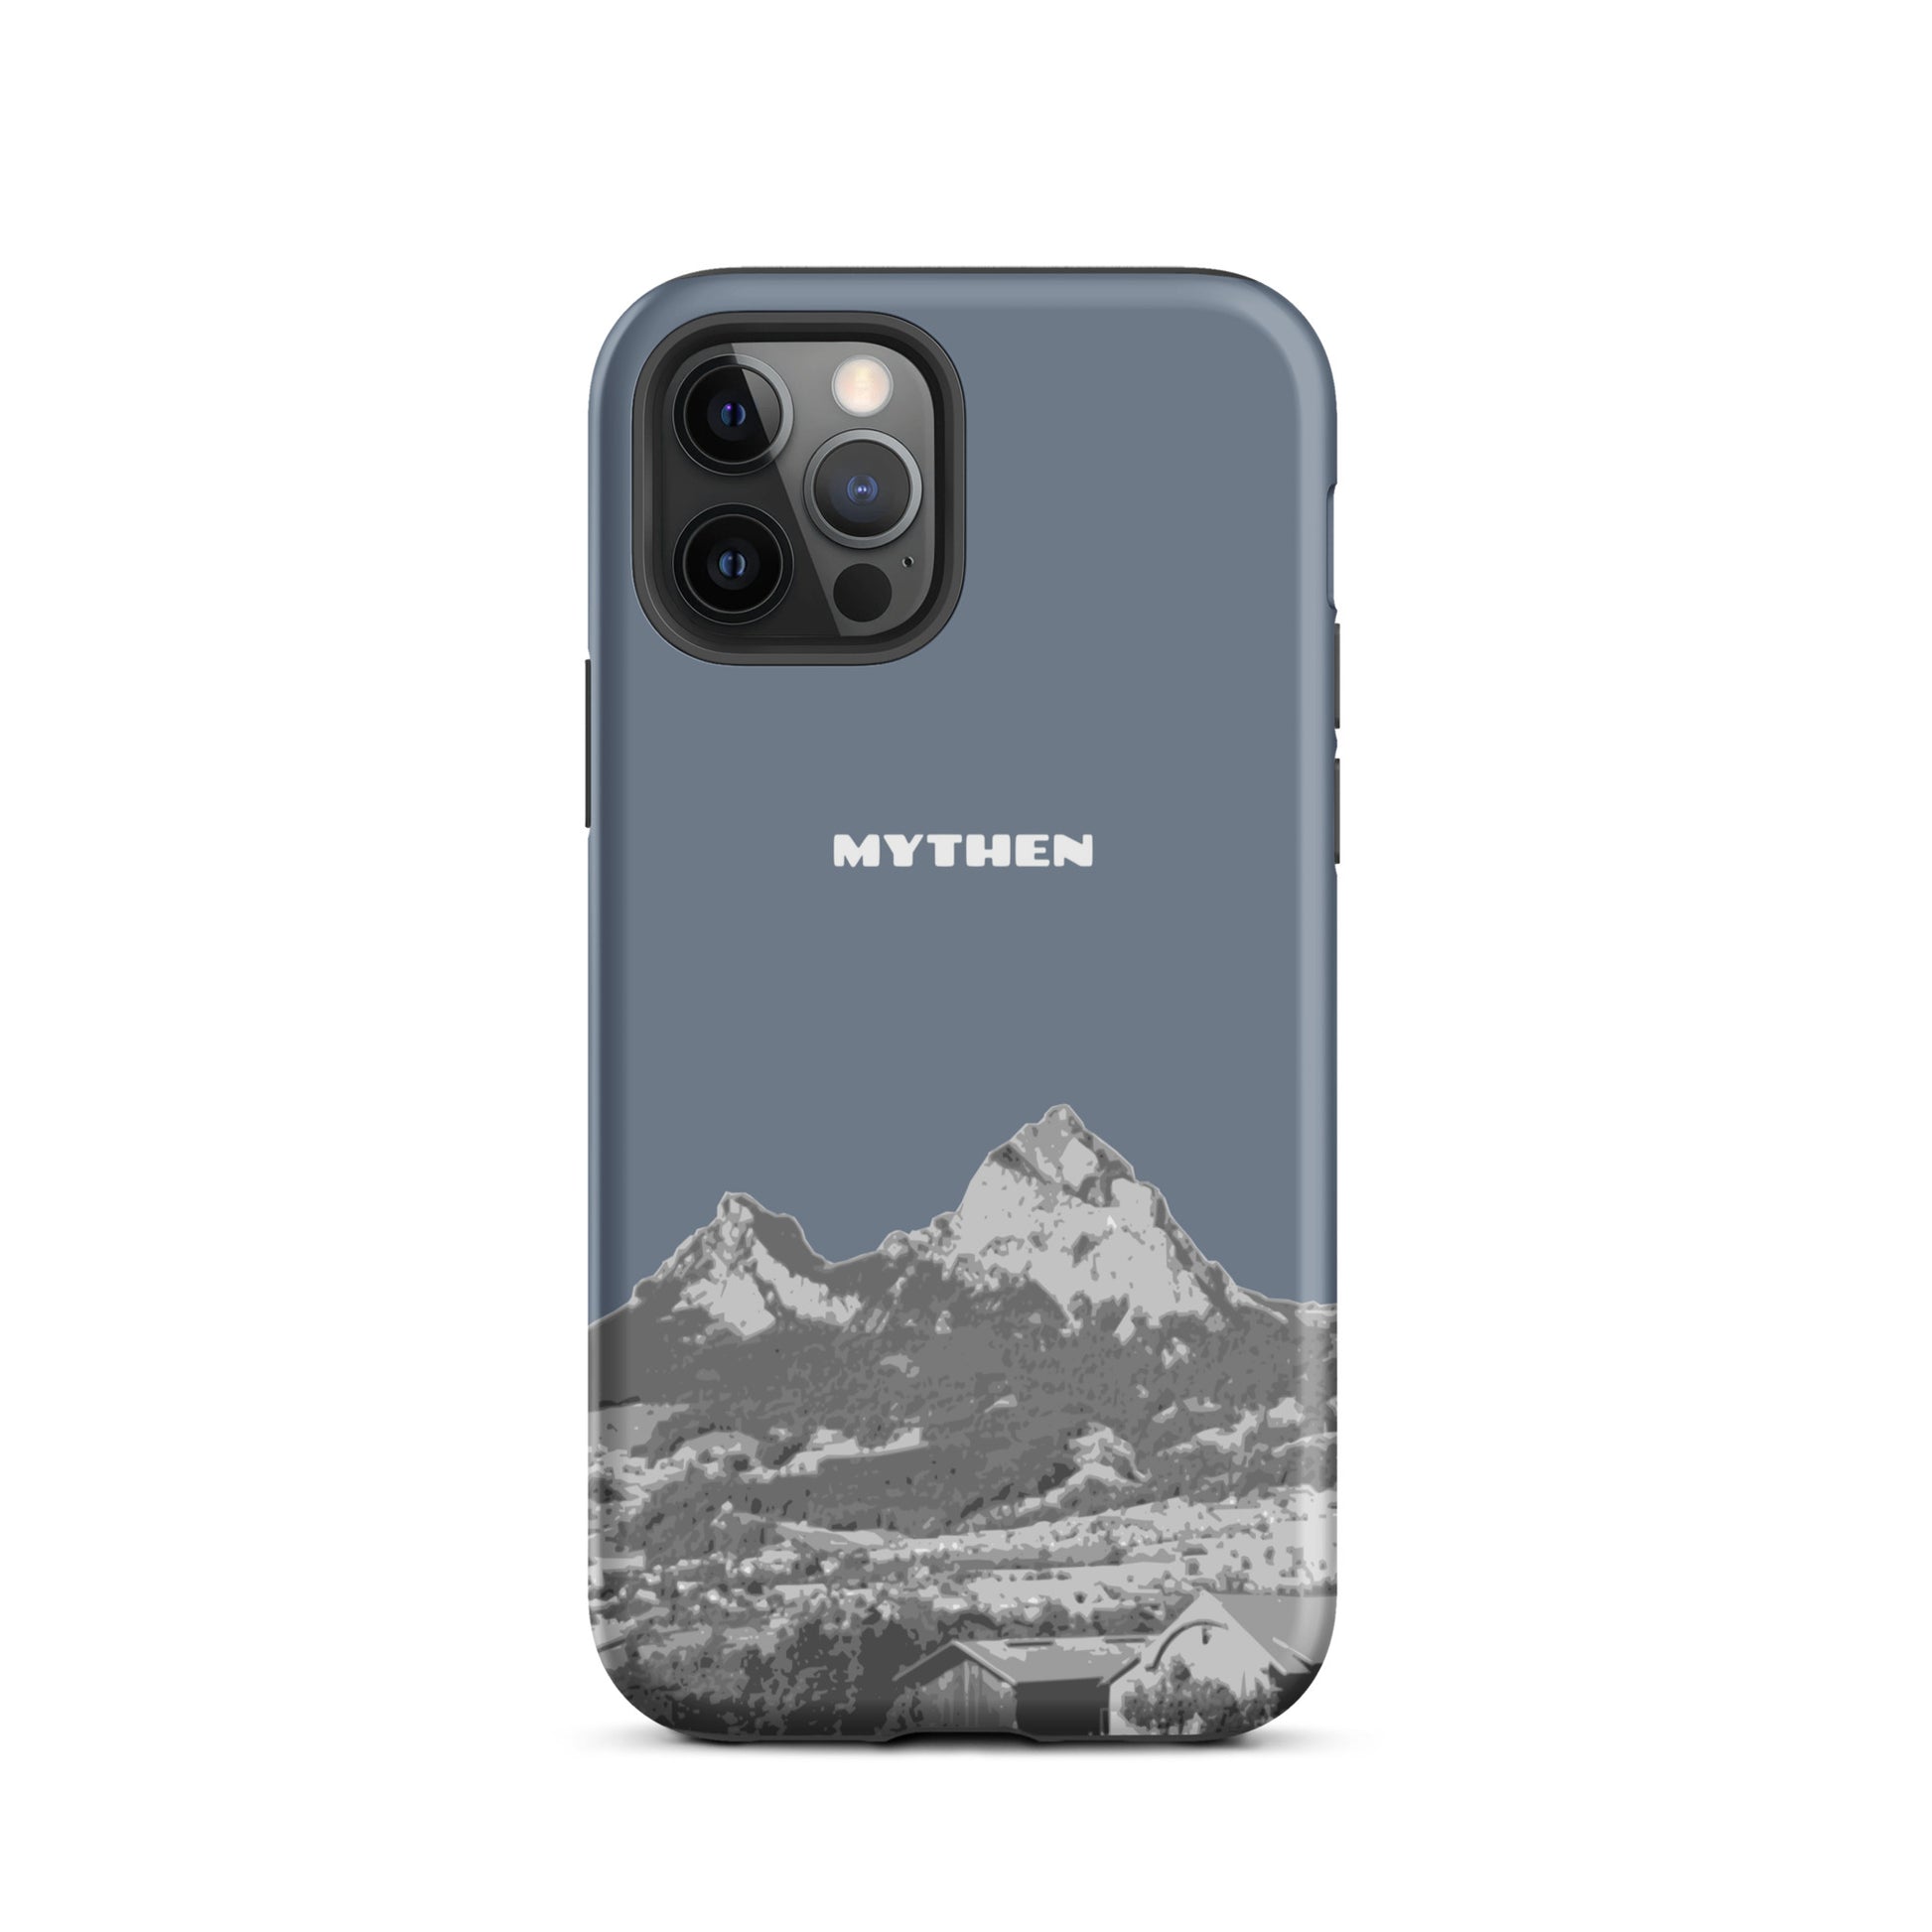 Hülle für das iPhone 12 Pro von Apple in der Farbe Schiefergrau, die den Grossen Mythen und den Kleinen Mythen bei Schwyz zeigt. 